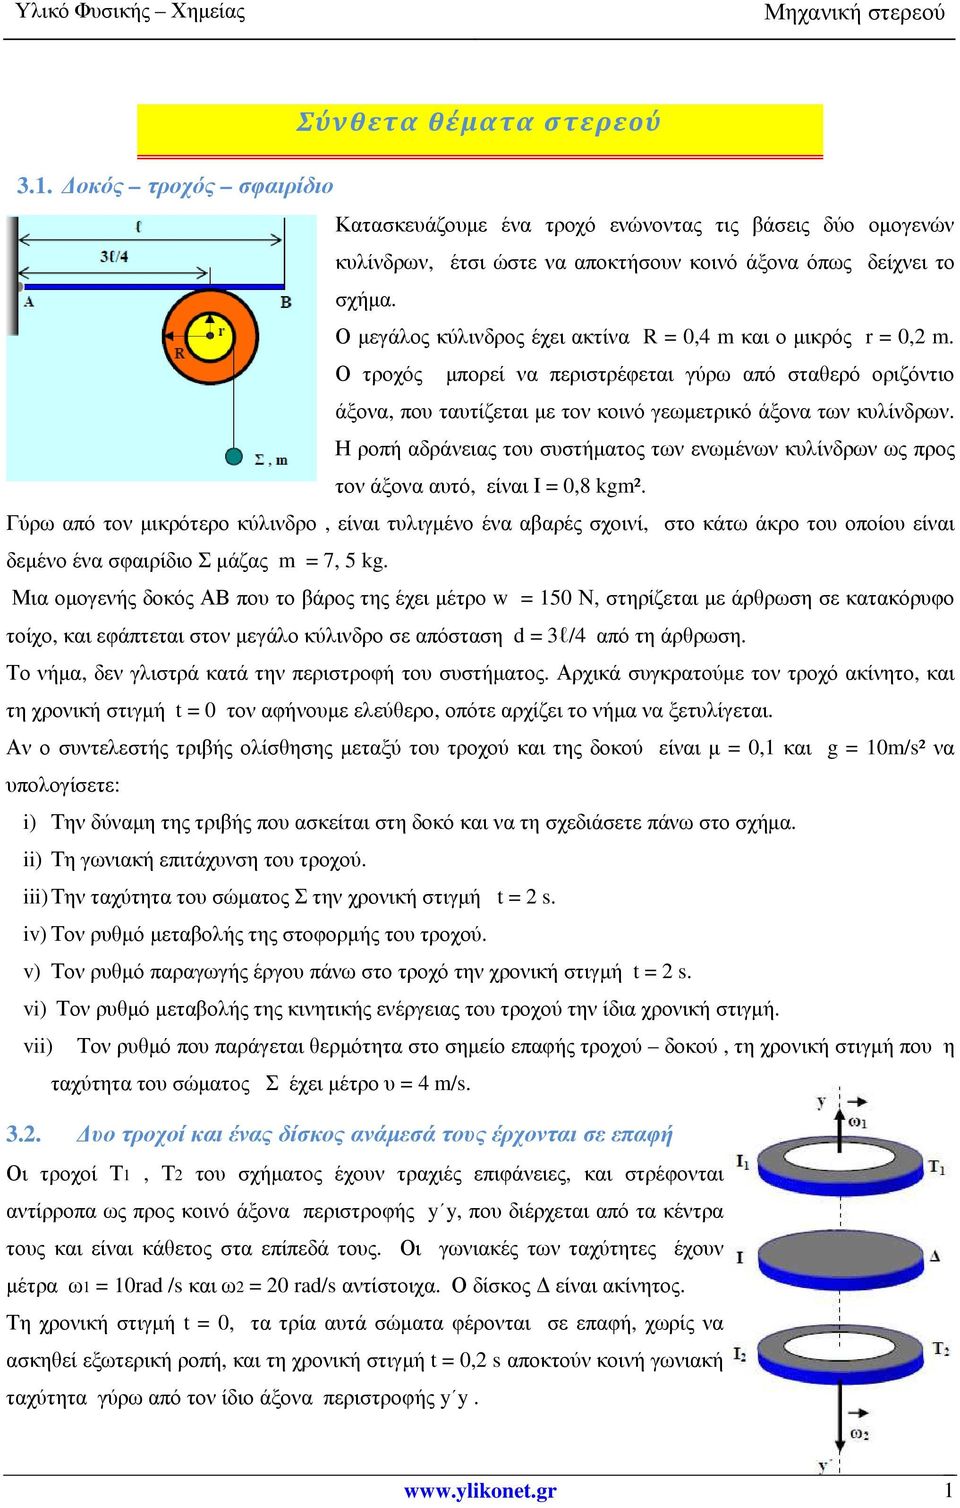 Η ροπή αδράνειας του συστήµατος των ενωµένων κυλίνδρων ως προς τον άξονα αυτό, είναι Ι = 0,8 kgm².